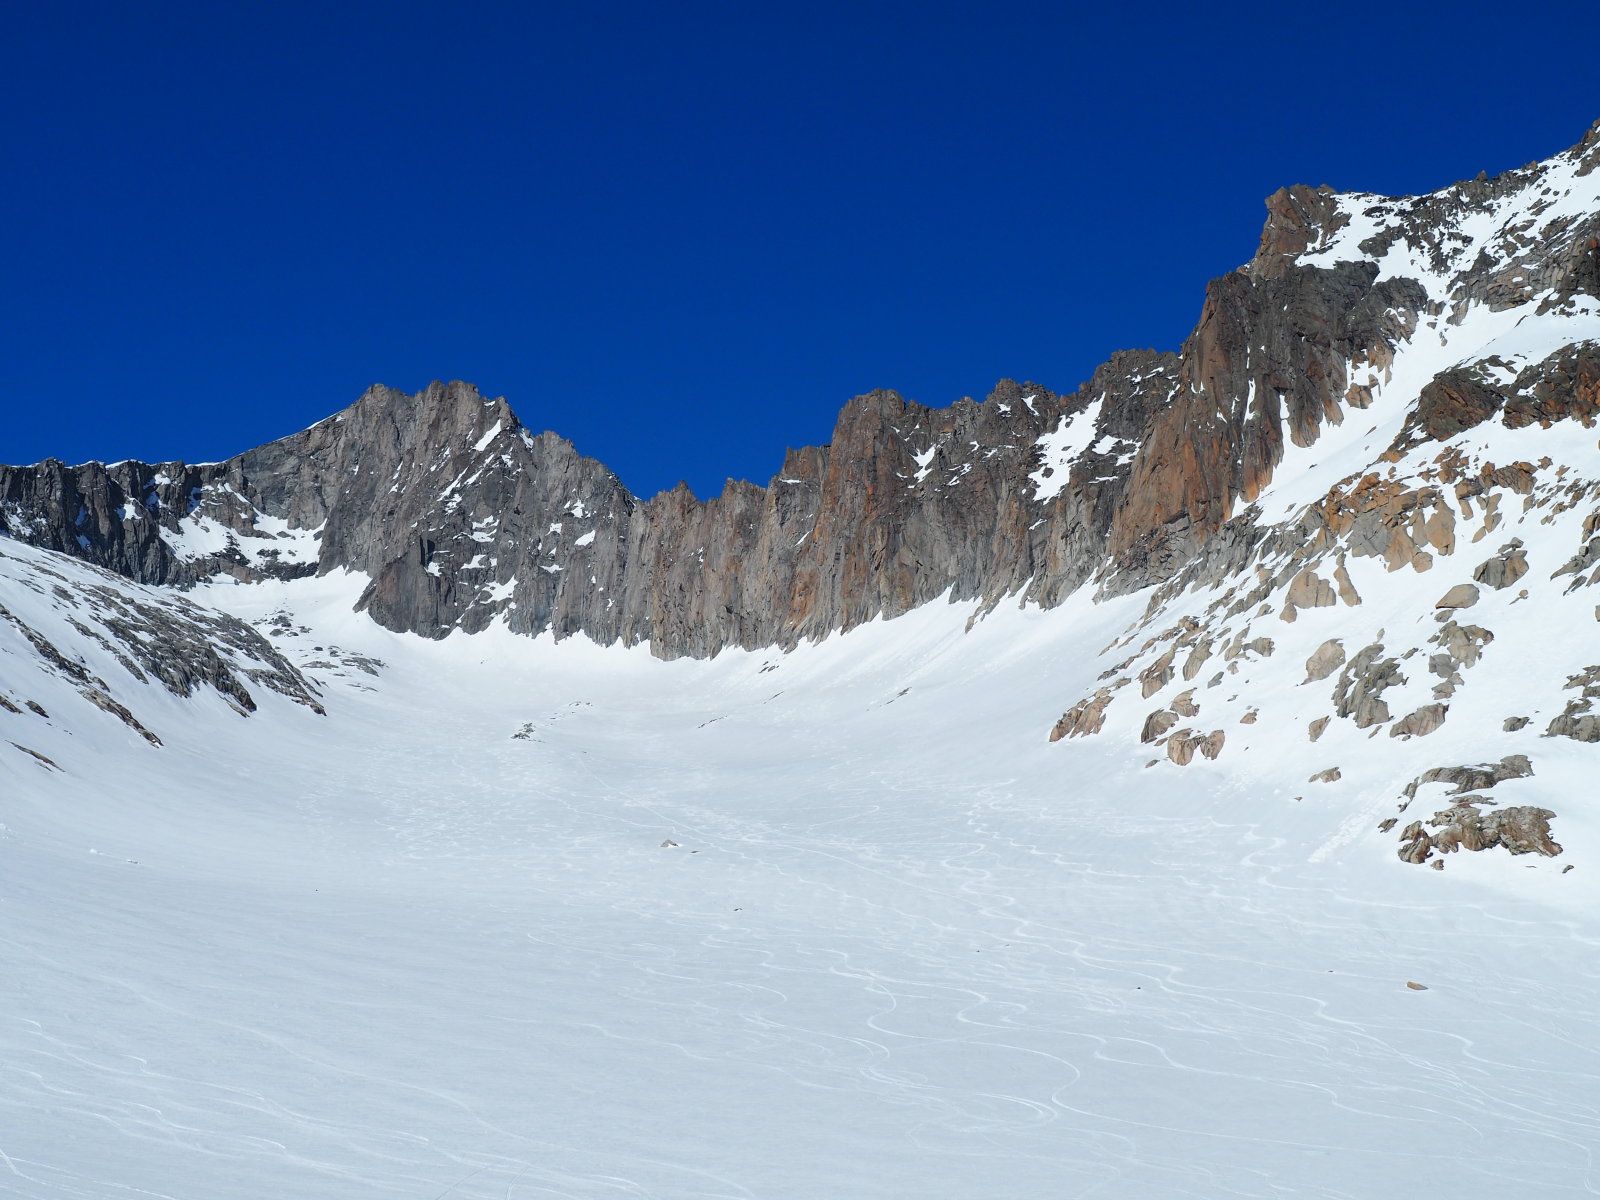 3400 méteres hegy mögötte a Rhoné gleccser van